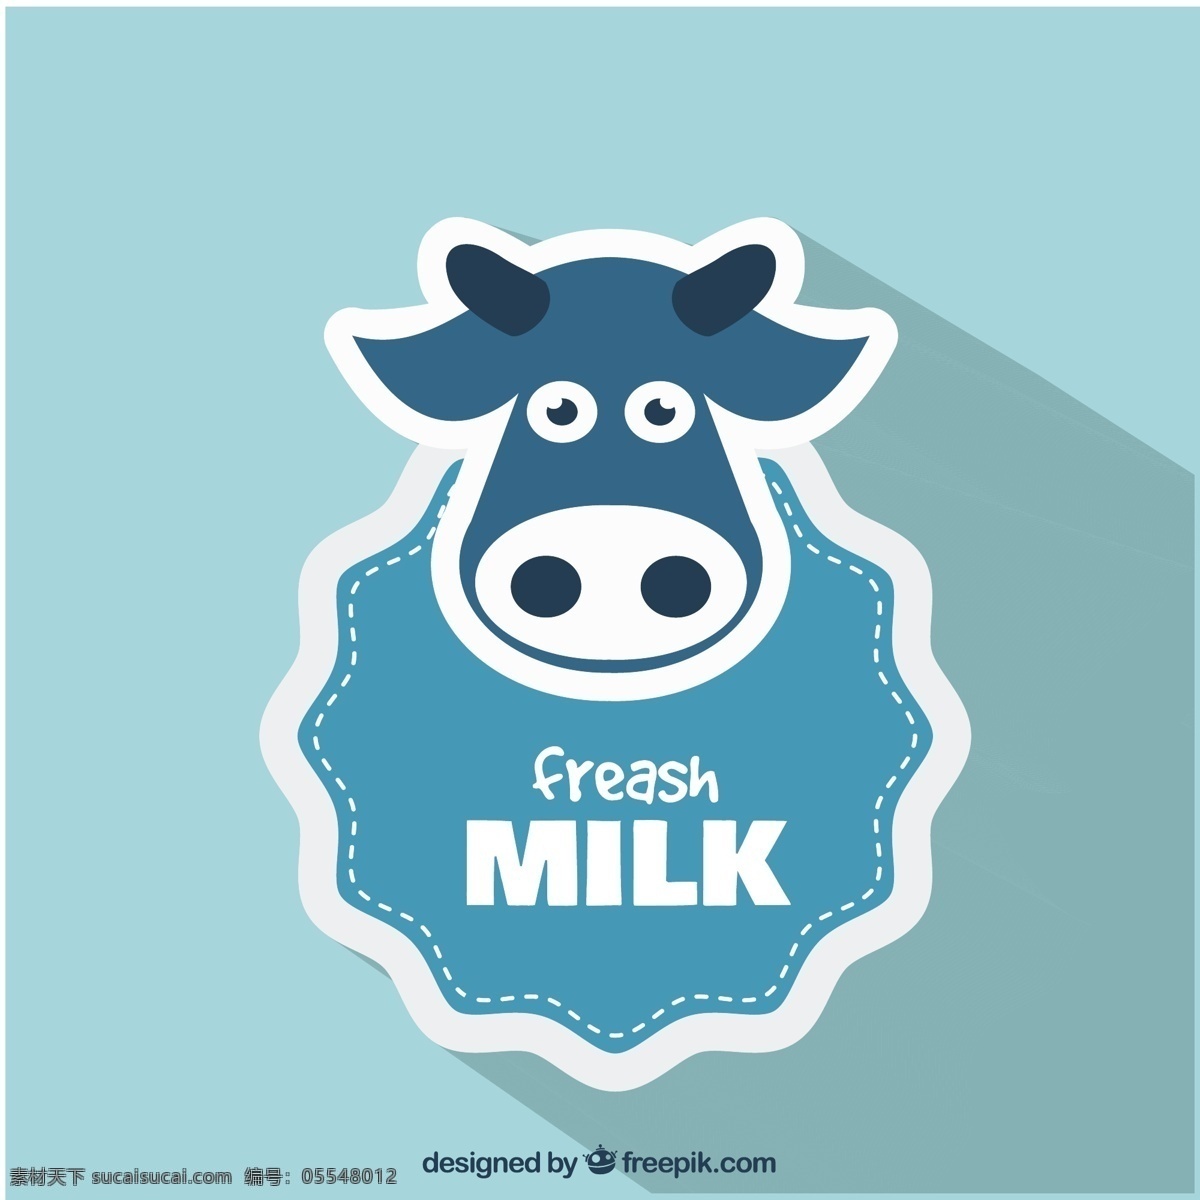 鲜牛奶 标识 标签 徽章 健康 农场 牛奶 奶牛 饮料 自然 新鲜 自然的标志 青色 天蓝色